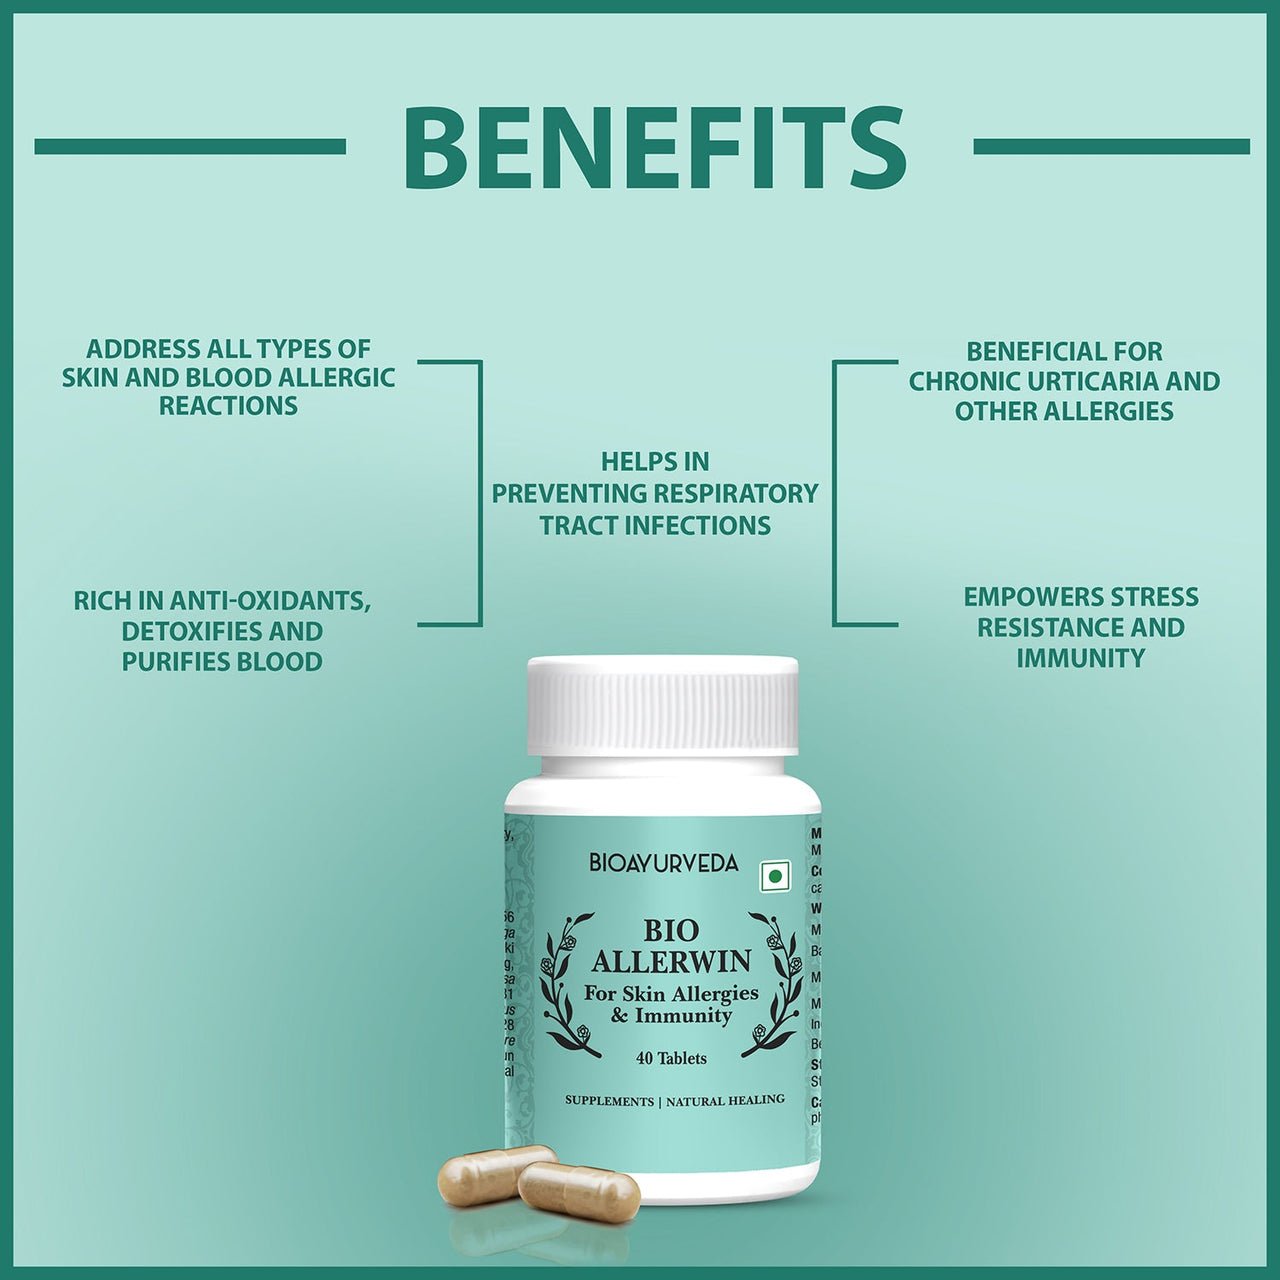 Bio Allerwin Tablet Benefits